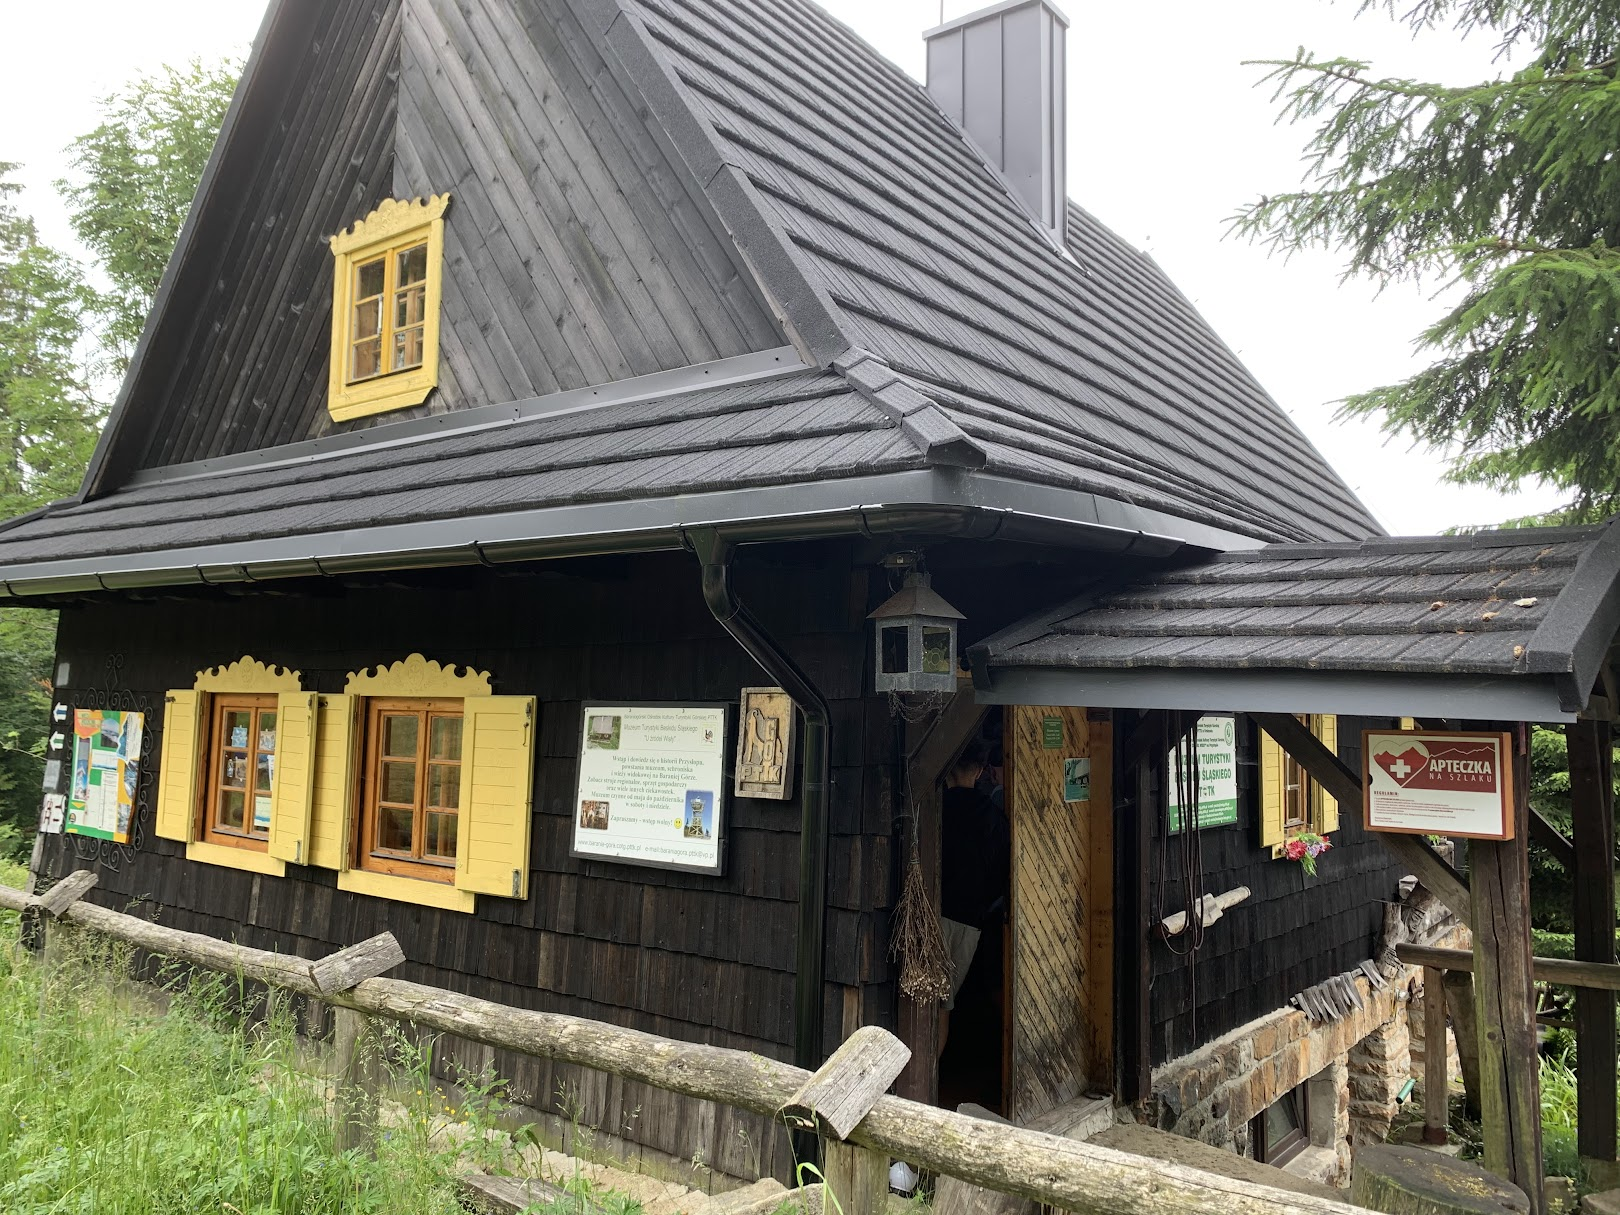 Muzeum Turystyki Górskiej przy schronisku PTTK na Przysłopie pod Baranią Górą.